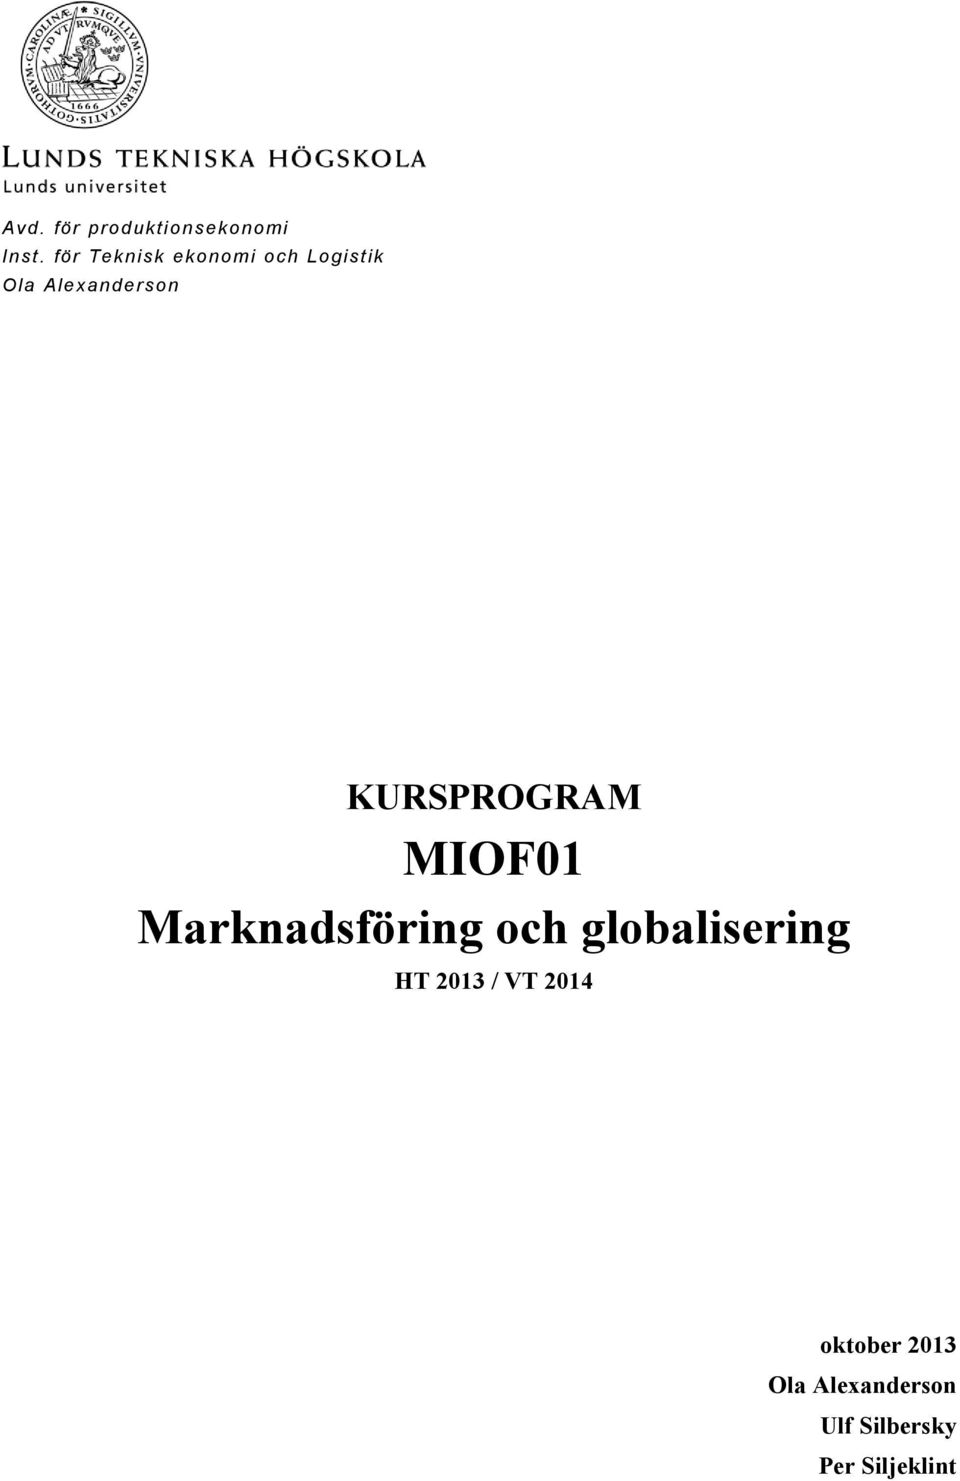 KURSPROGRAM MIOF01 Marknadsföring och globalisering